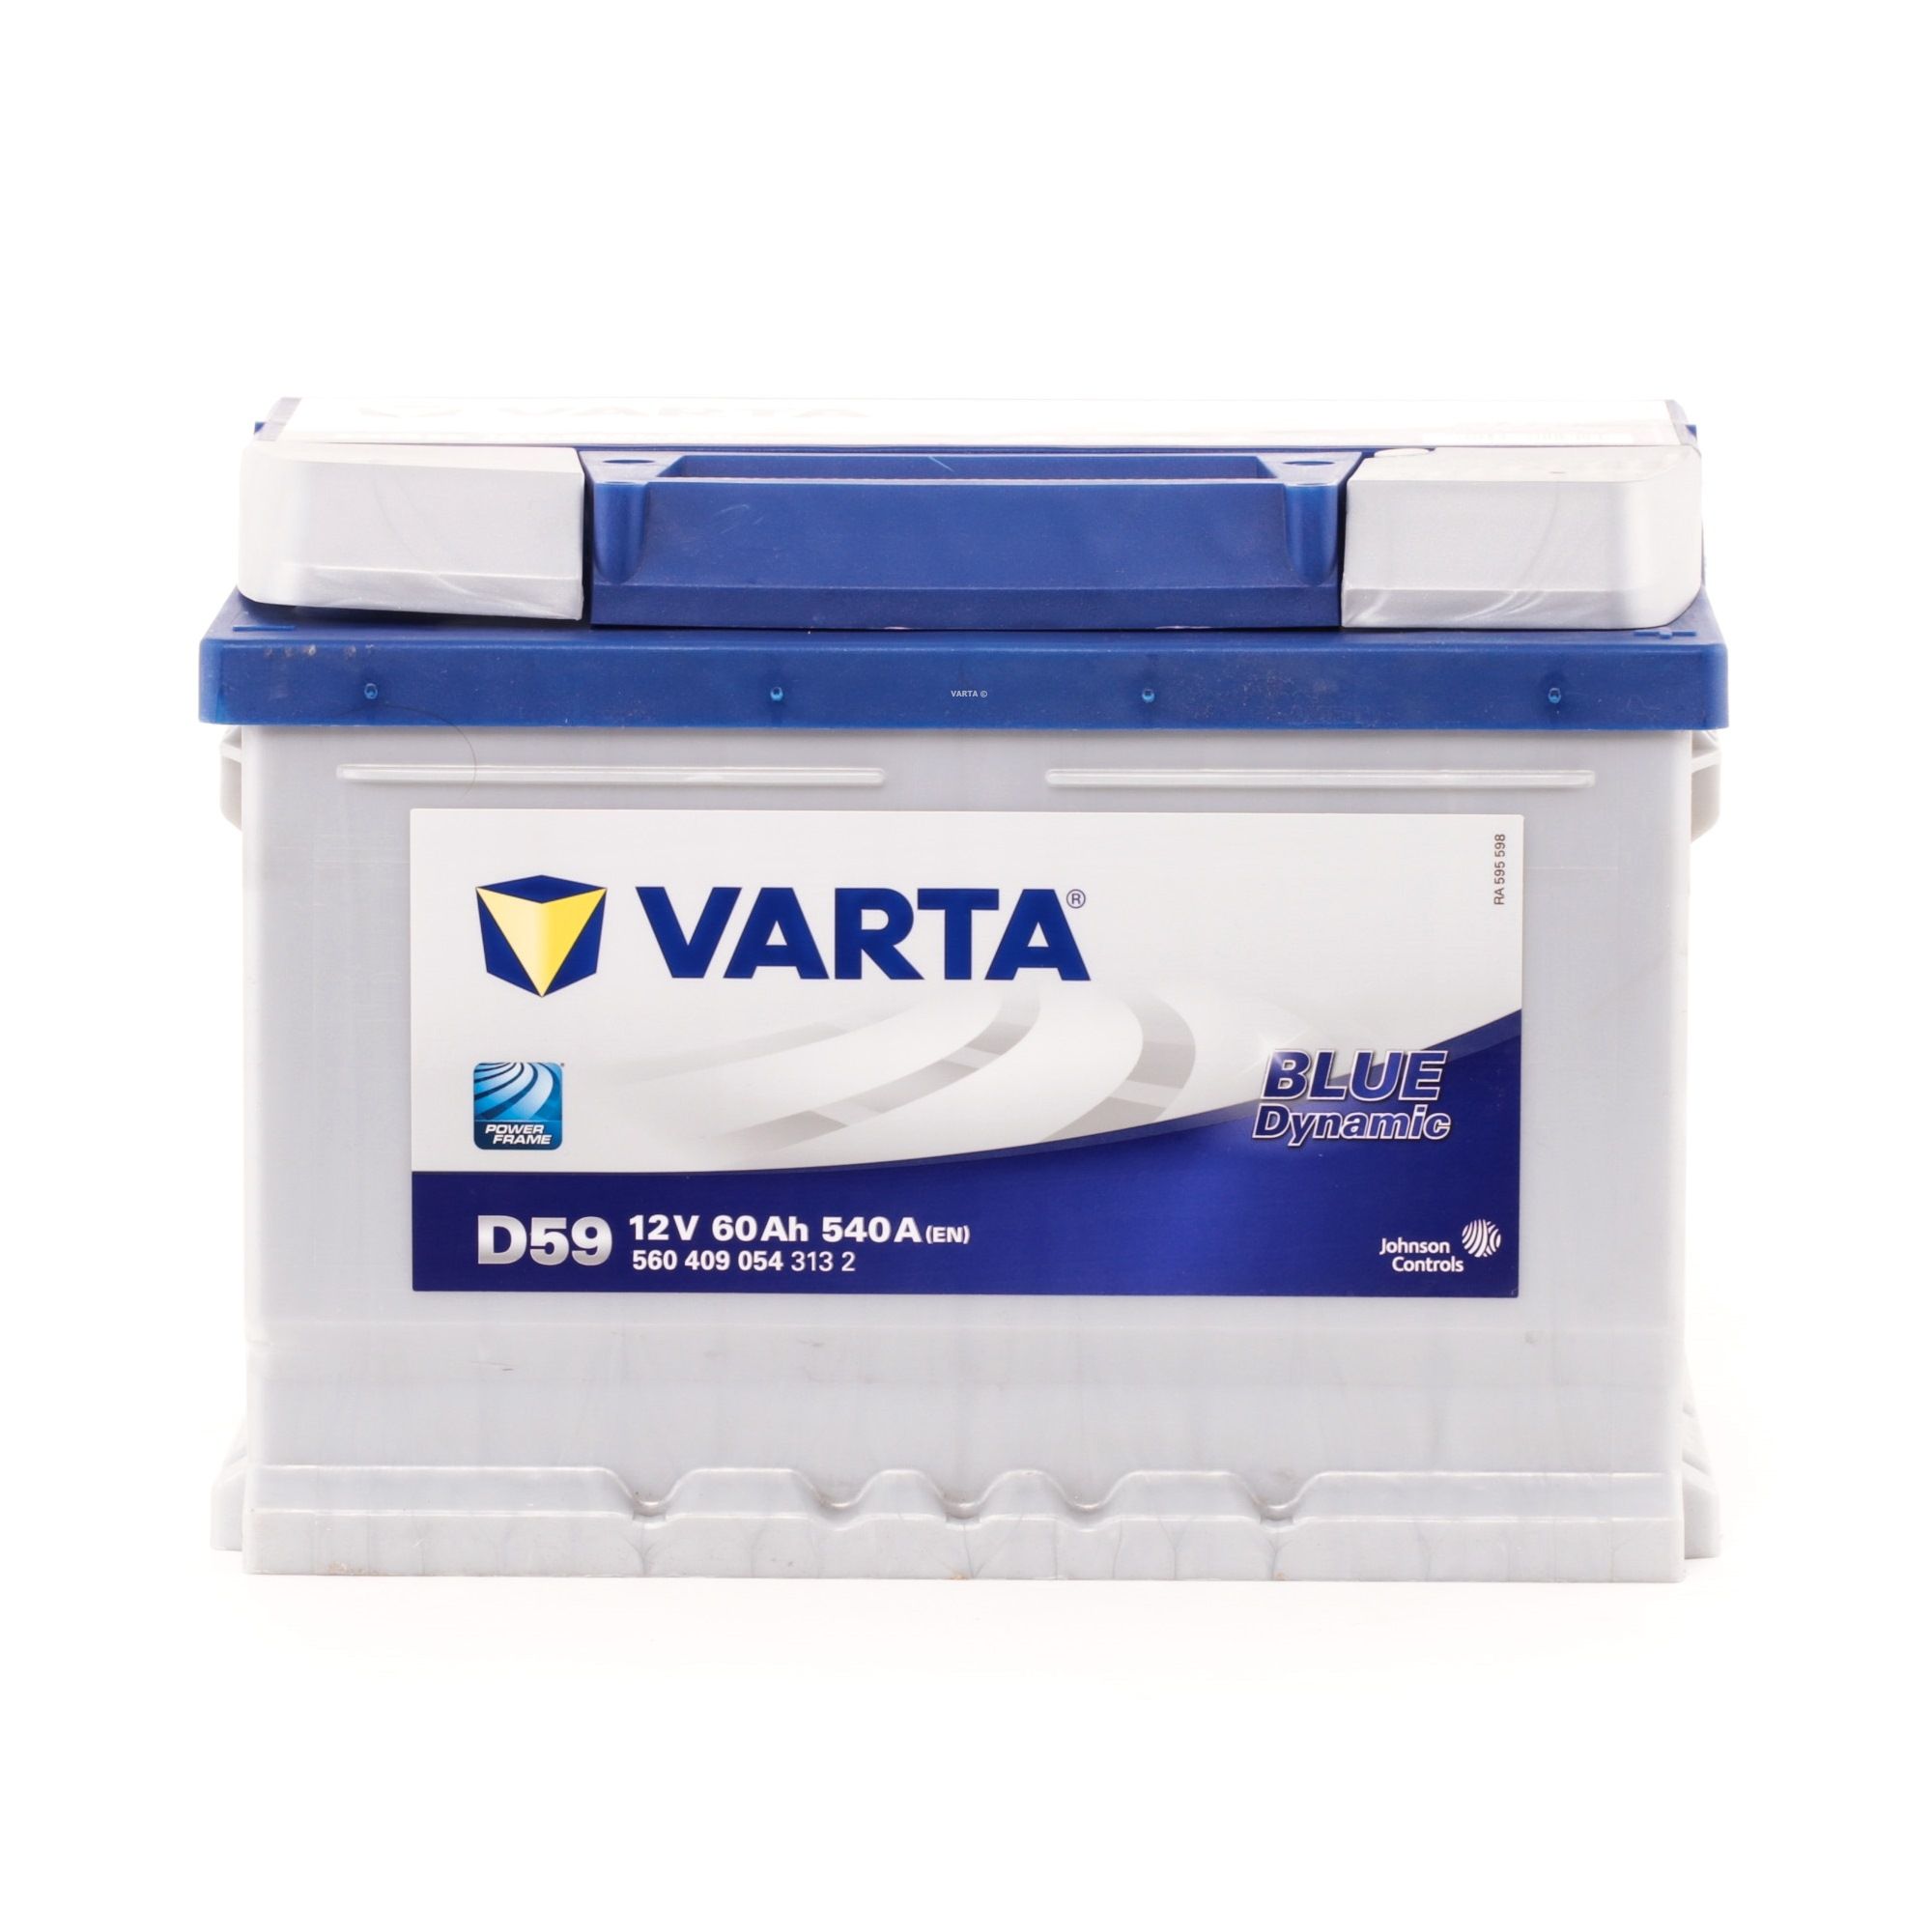 560409054 075 D59 Varta Blue Dynamic Car Battery 12V 60Ah 